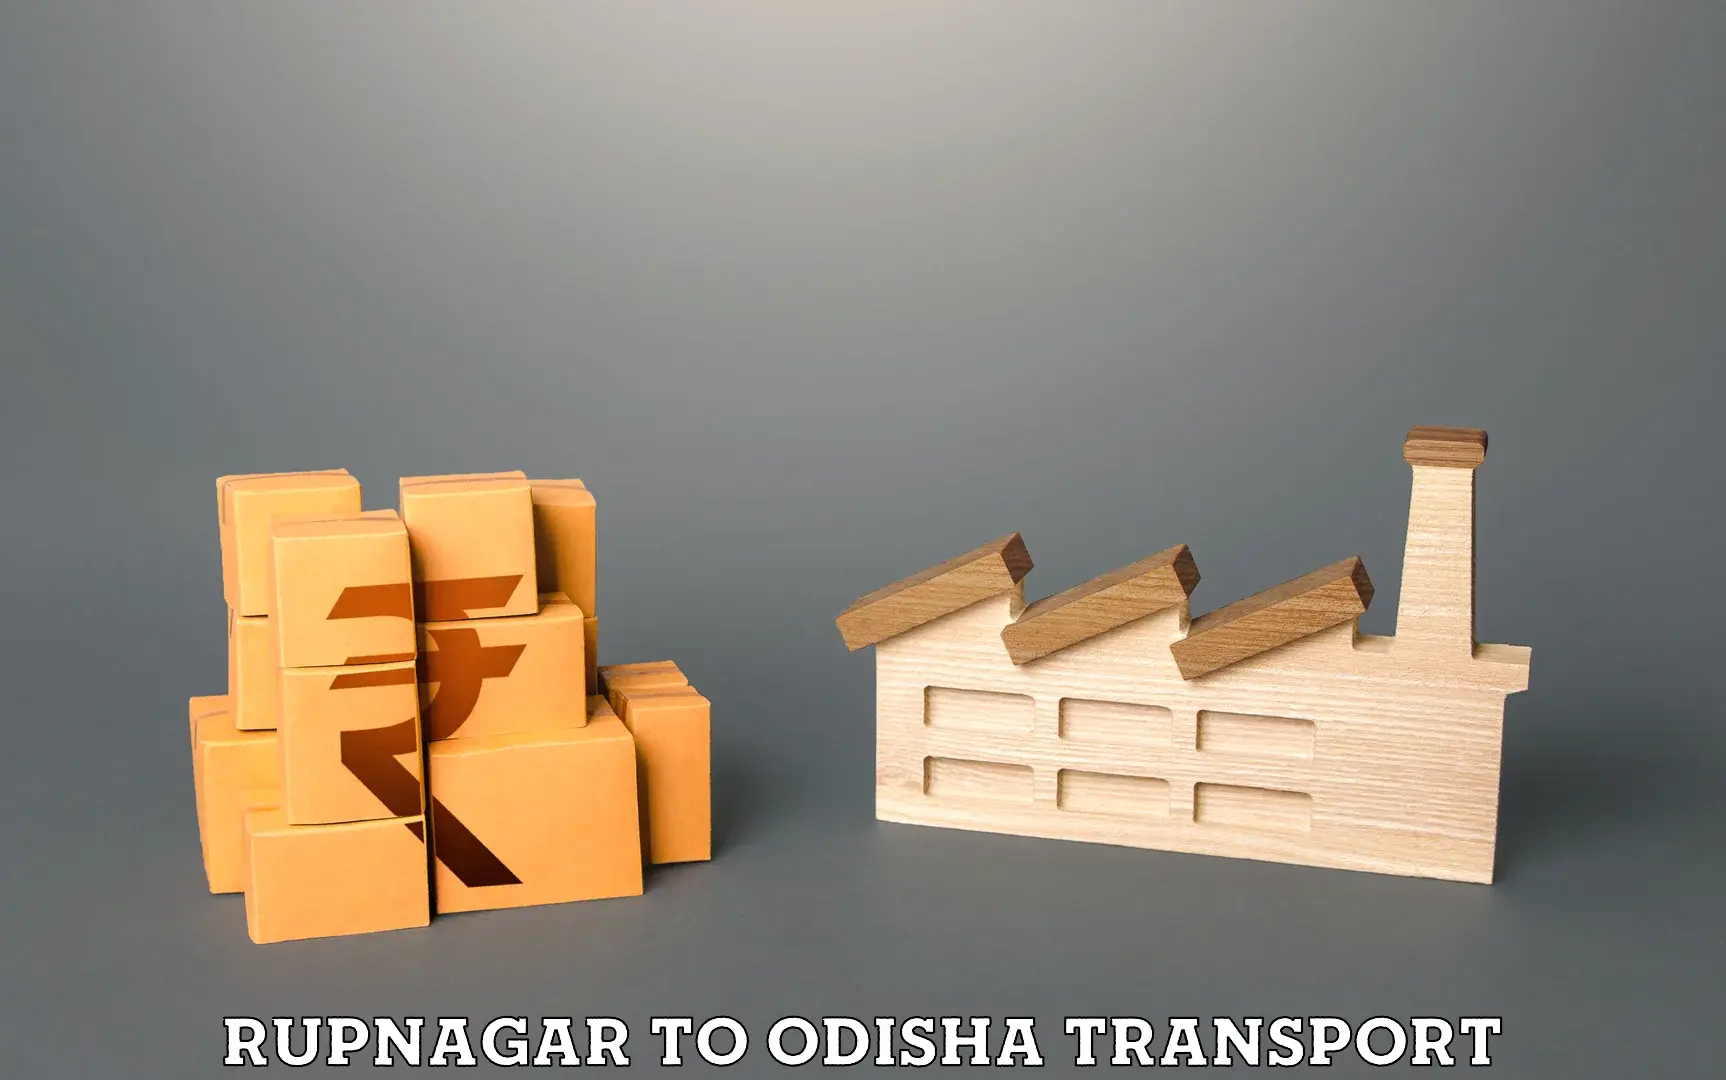 Commercial transport service Rupnagar to Jajpur